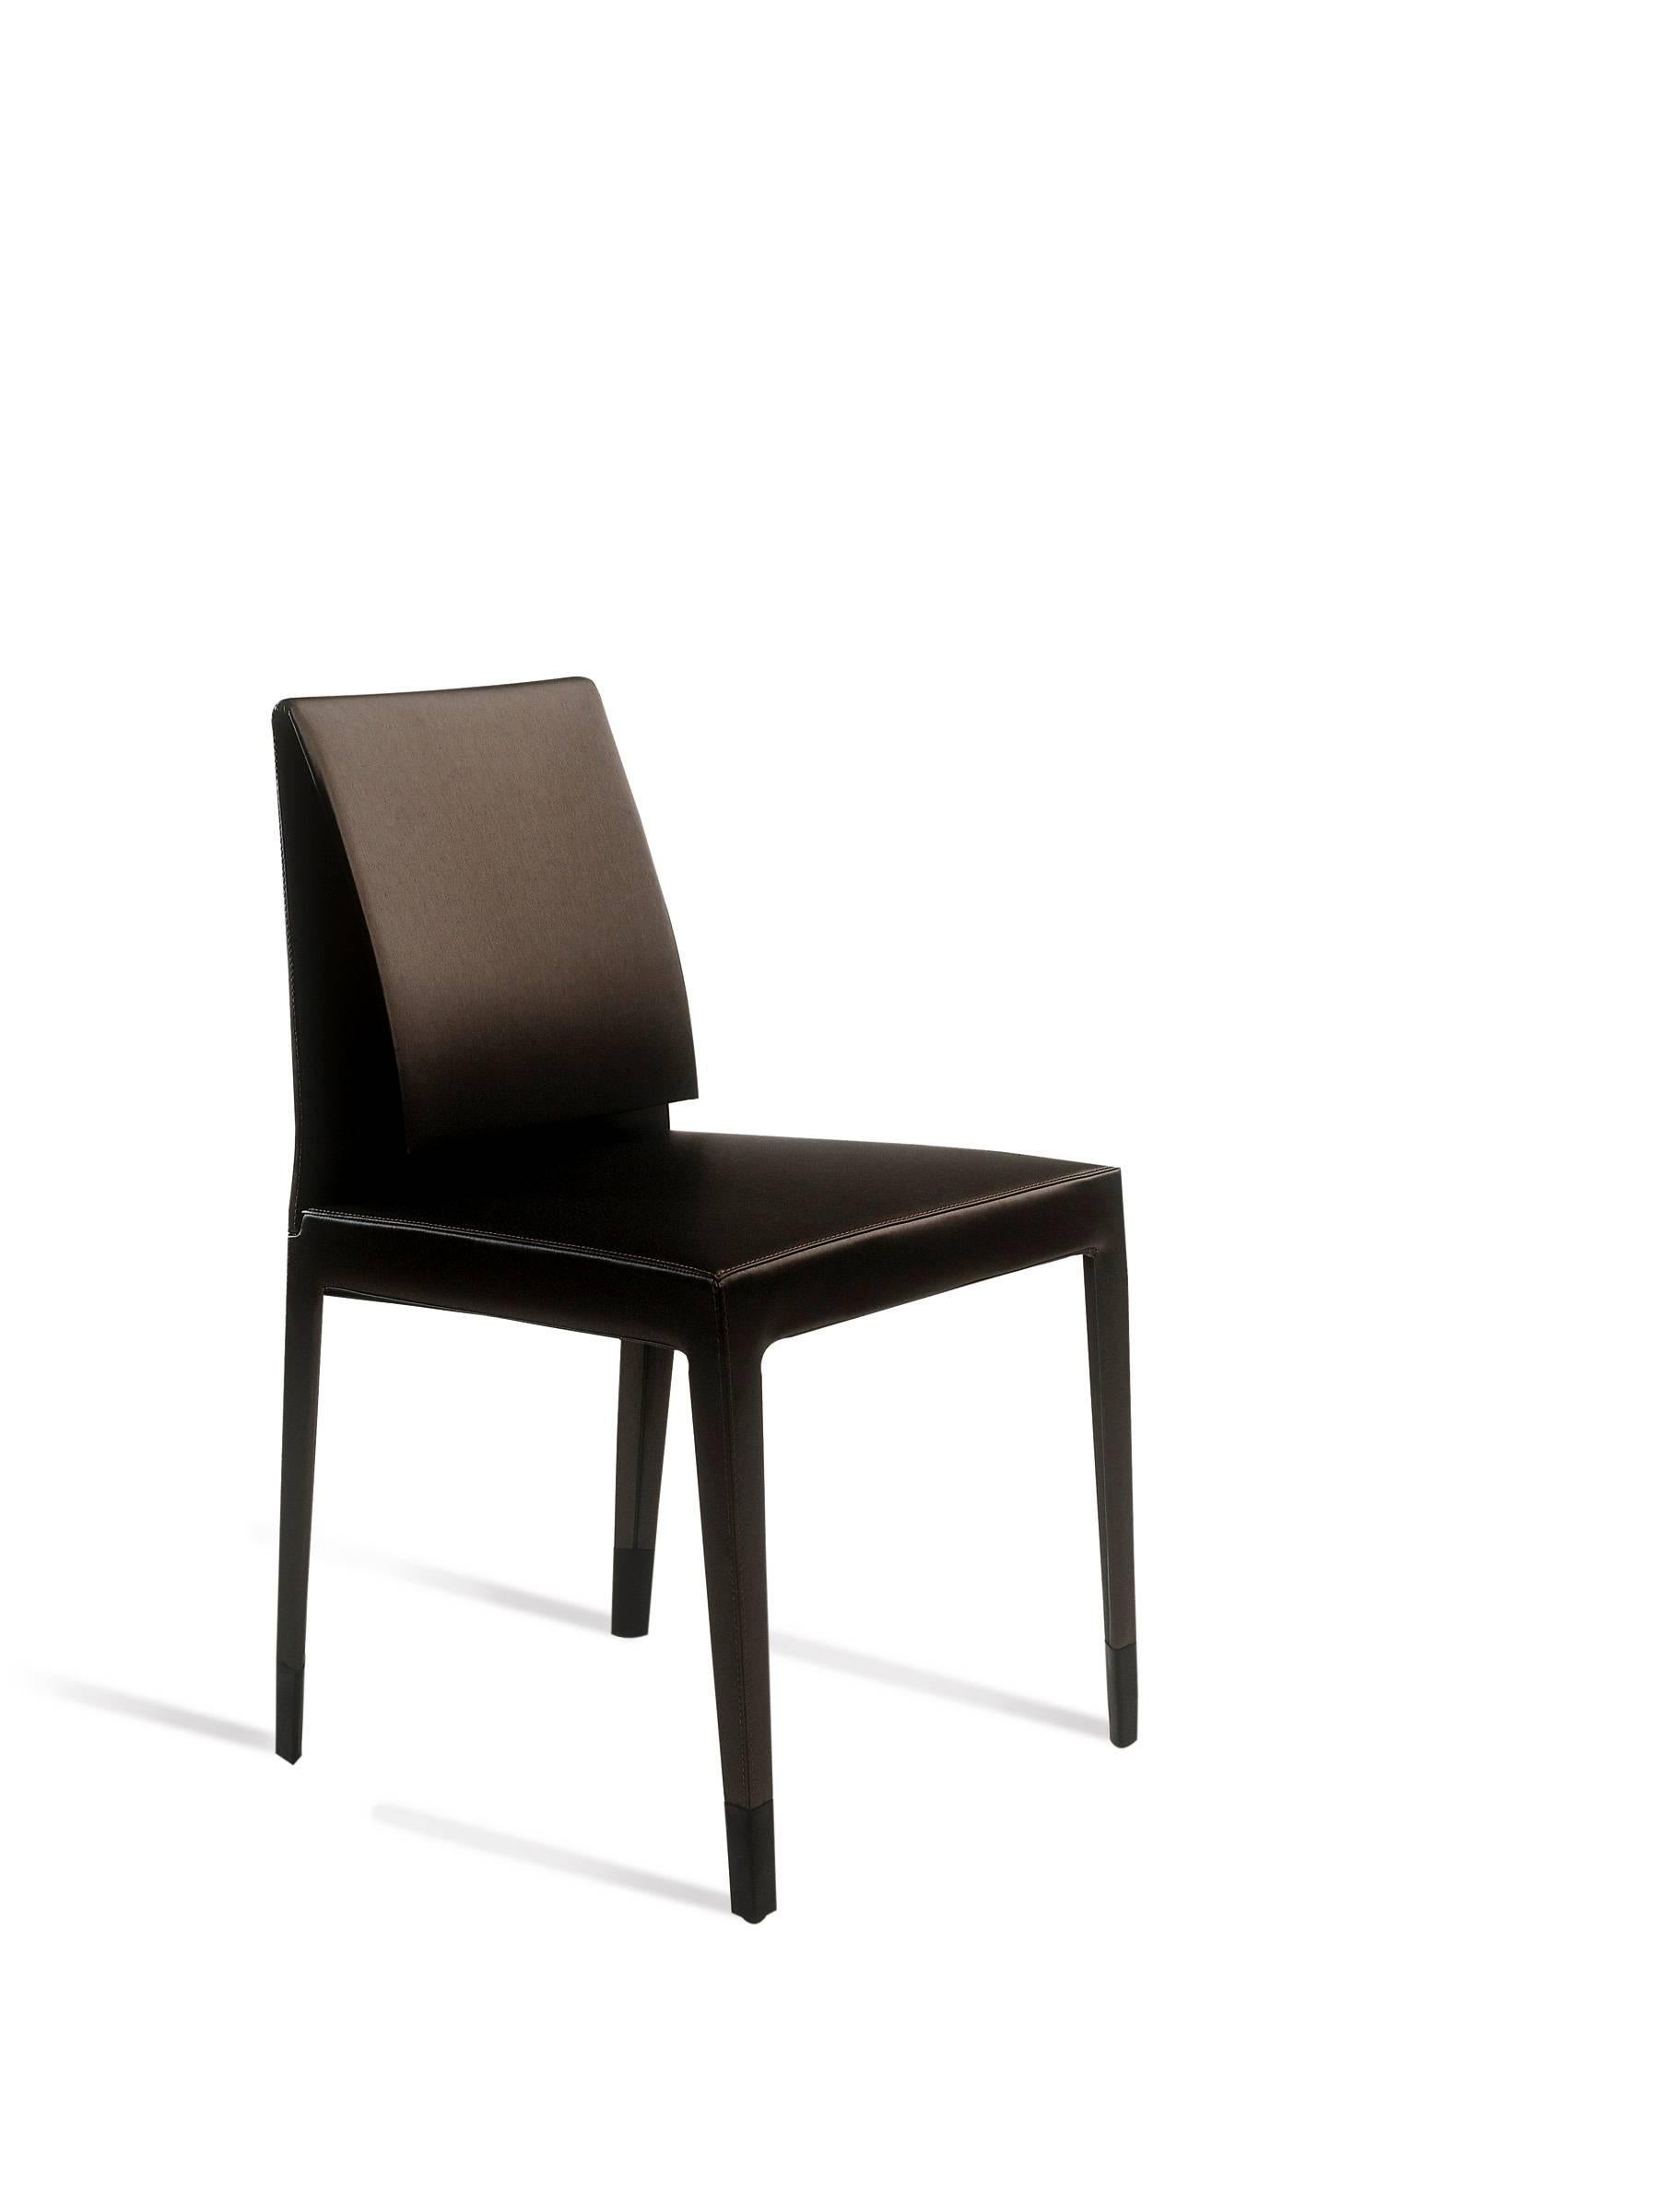 Baleri Italia Marì Chair in Mauve by Luigi Baroli In New Condition For Sale In Milano, Lombardia